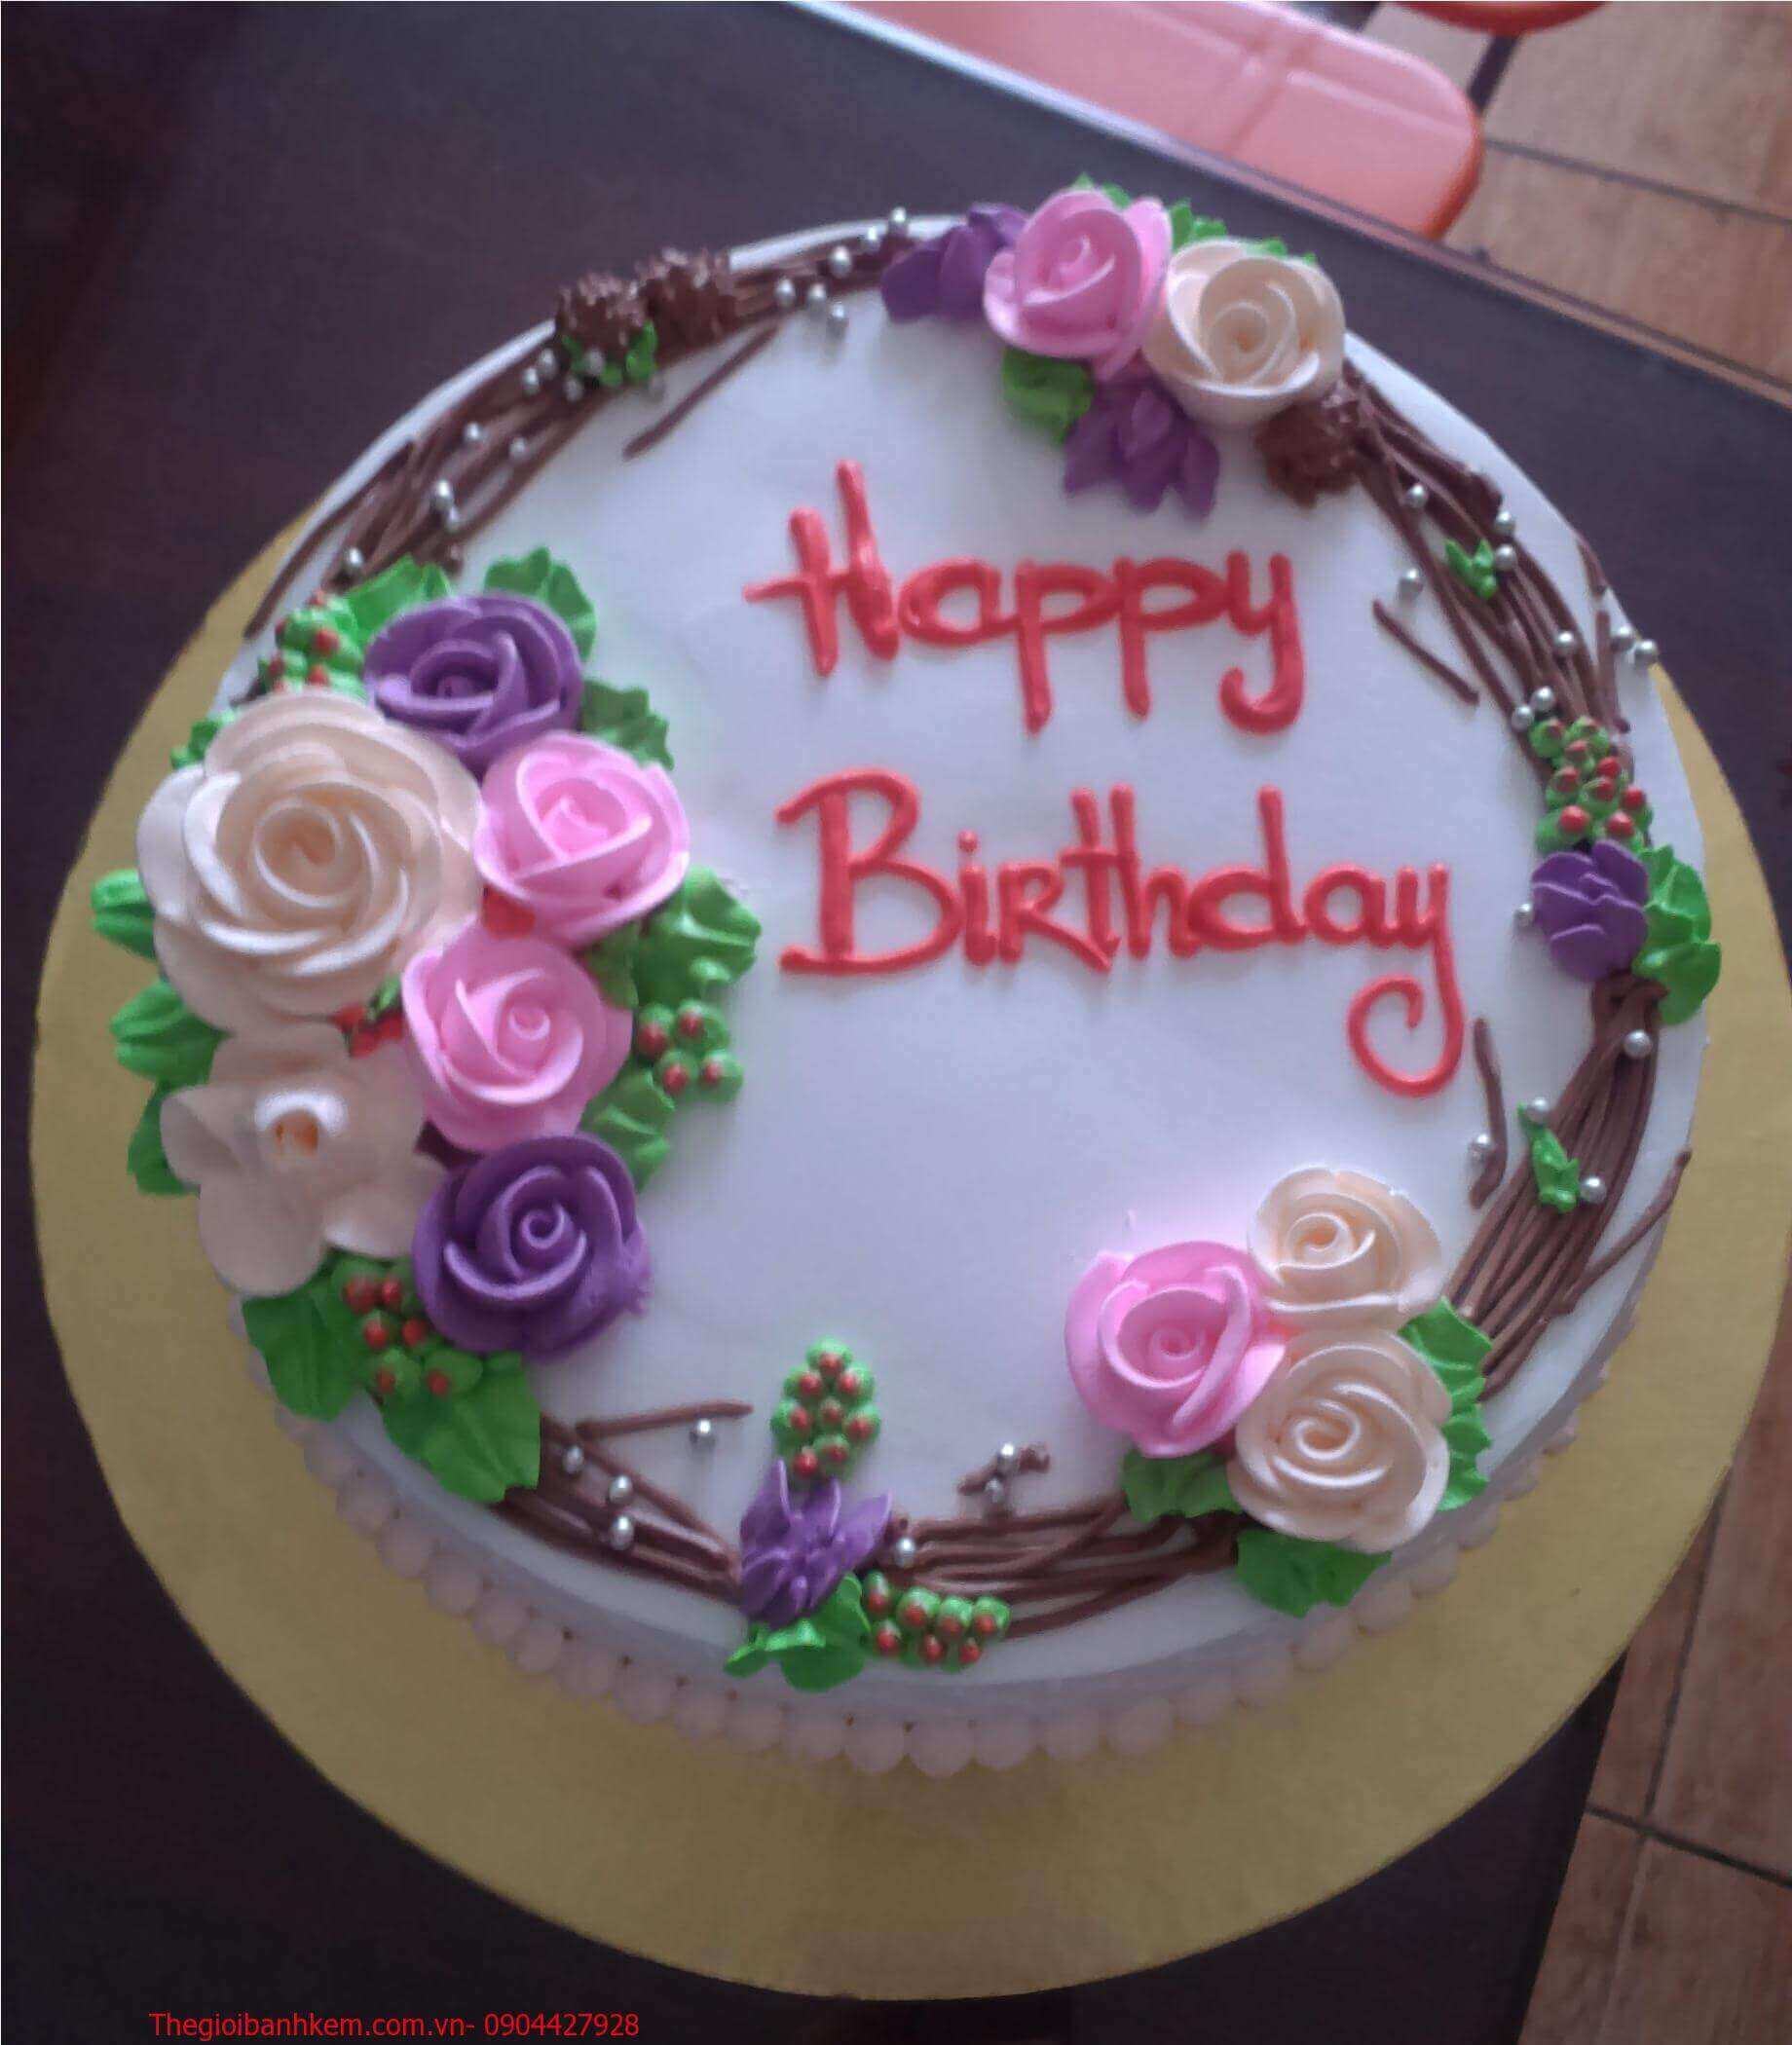 Một chiếc bánh sinh nhật đơn giản nhưng tuyệt vời để dành tặng cho người thân yêu của bạn